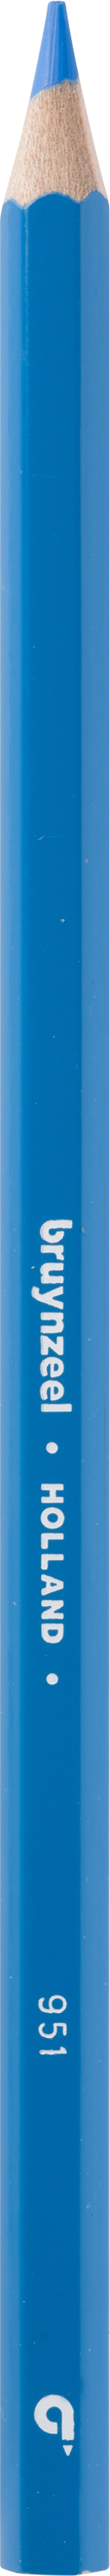 BRUYNZEEL Crayon de couleur Super 3.3mm 60516951 bleu ciel